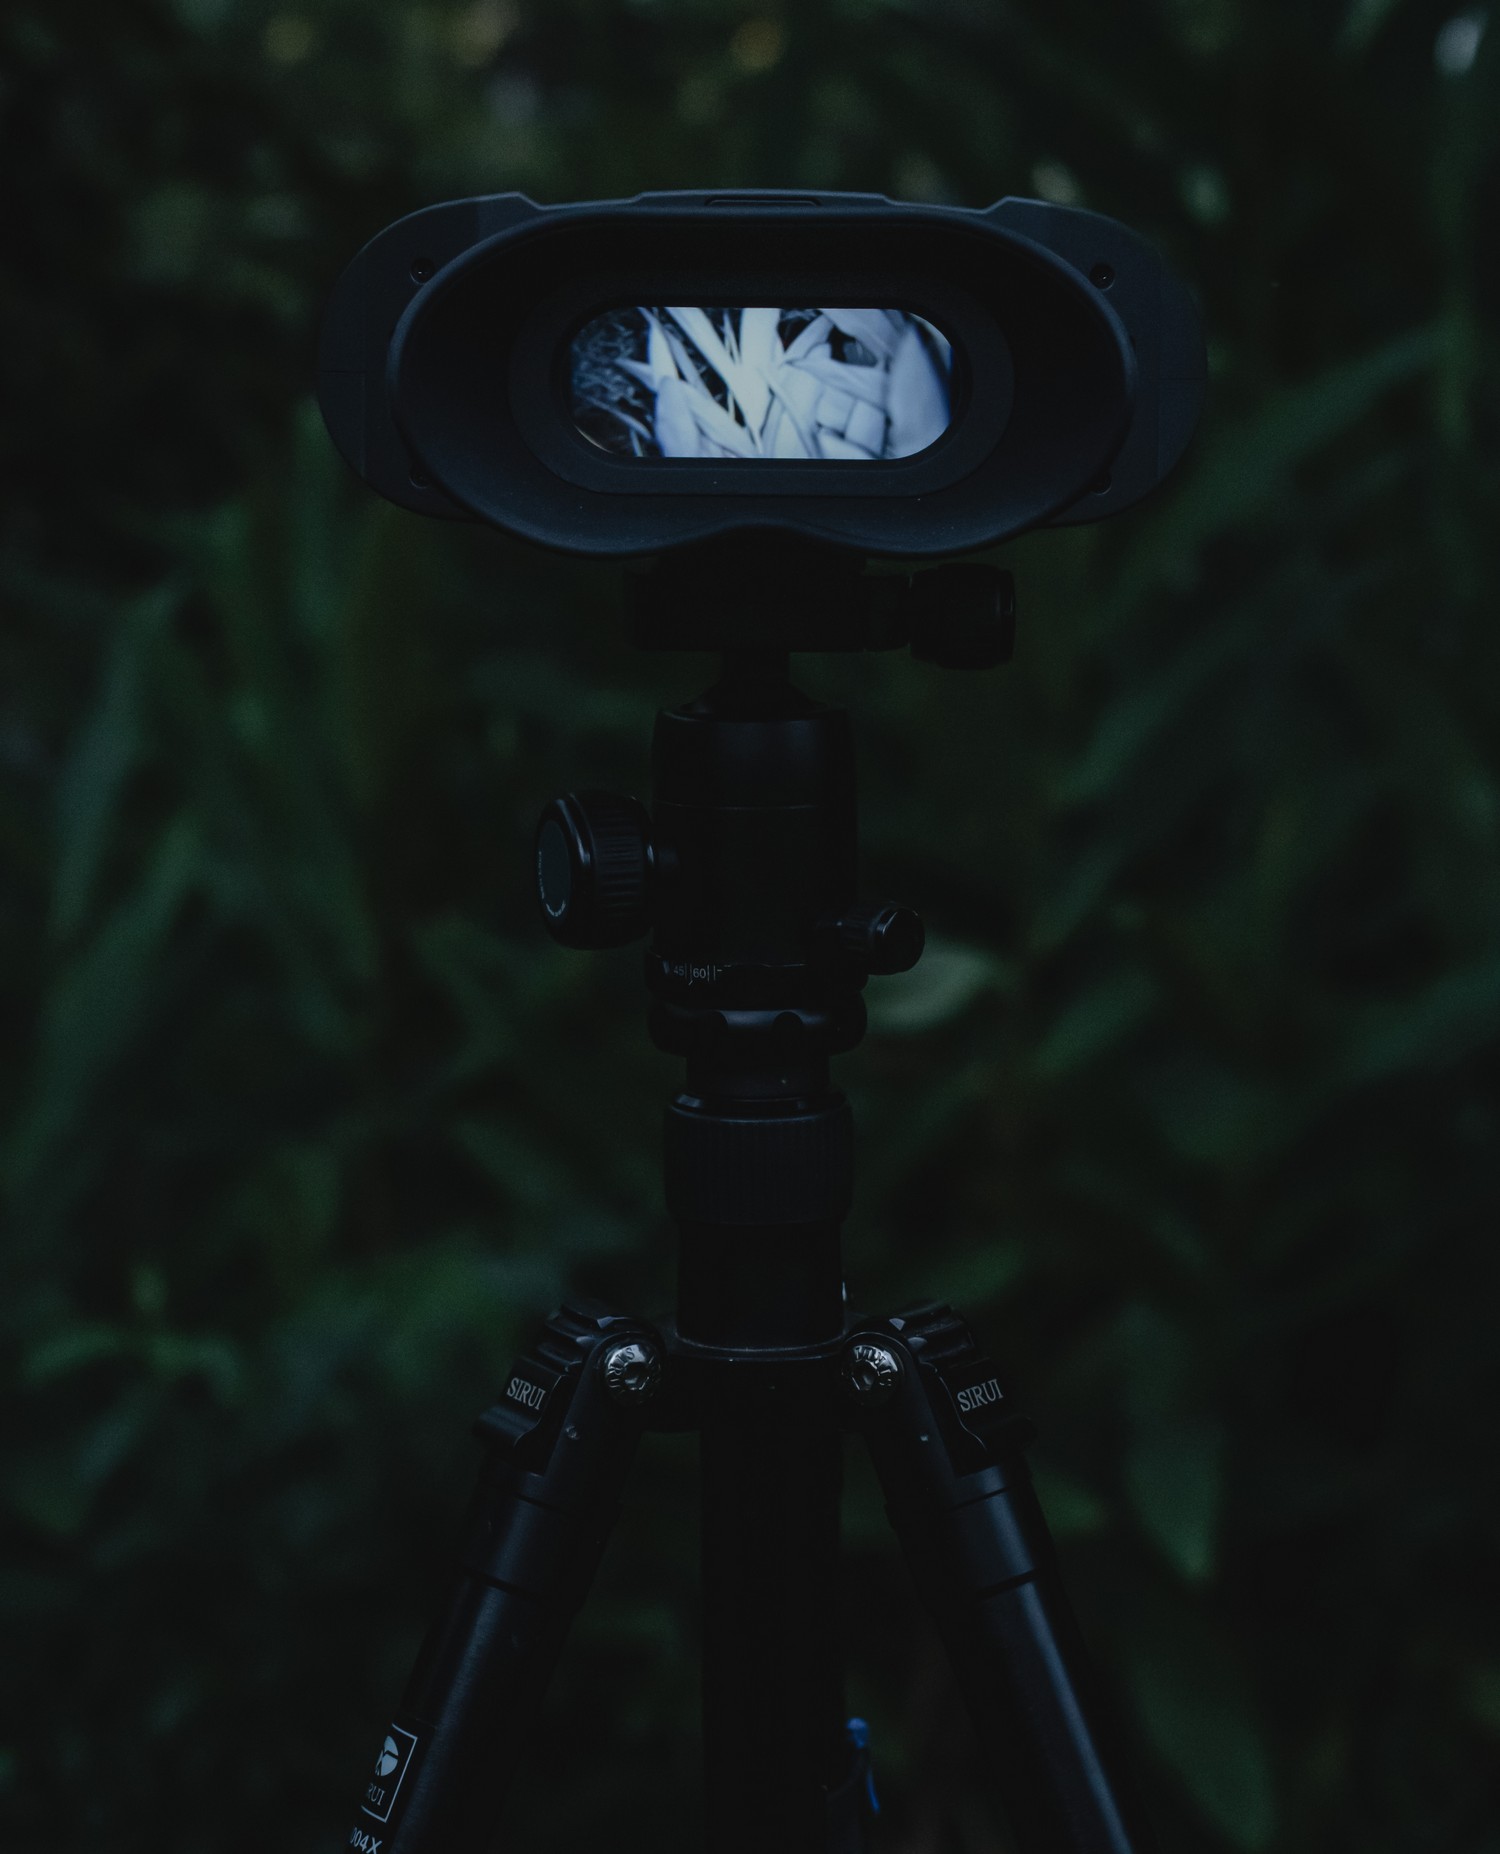 tầm nhìn ban đêm NVB 200 - Tự động chuyển đổi chế độ kép ngày và đêm